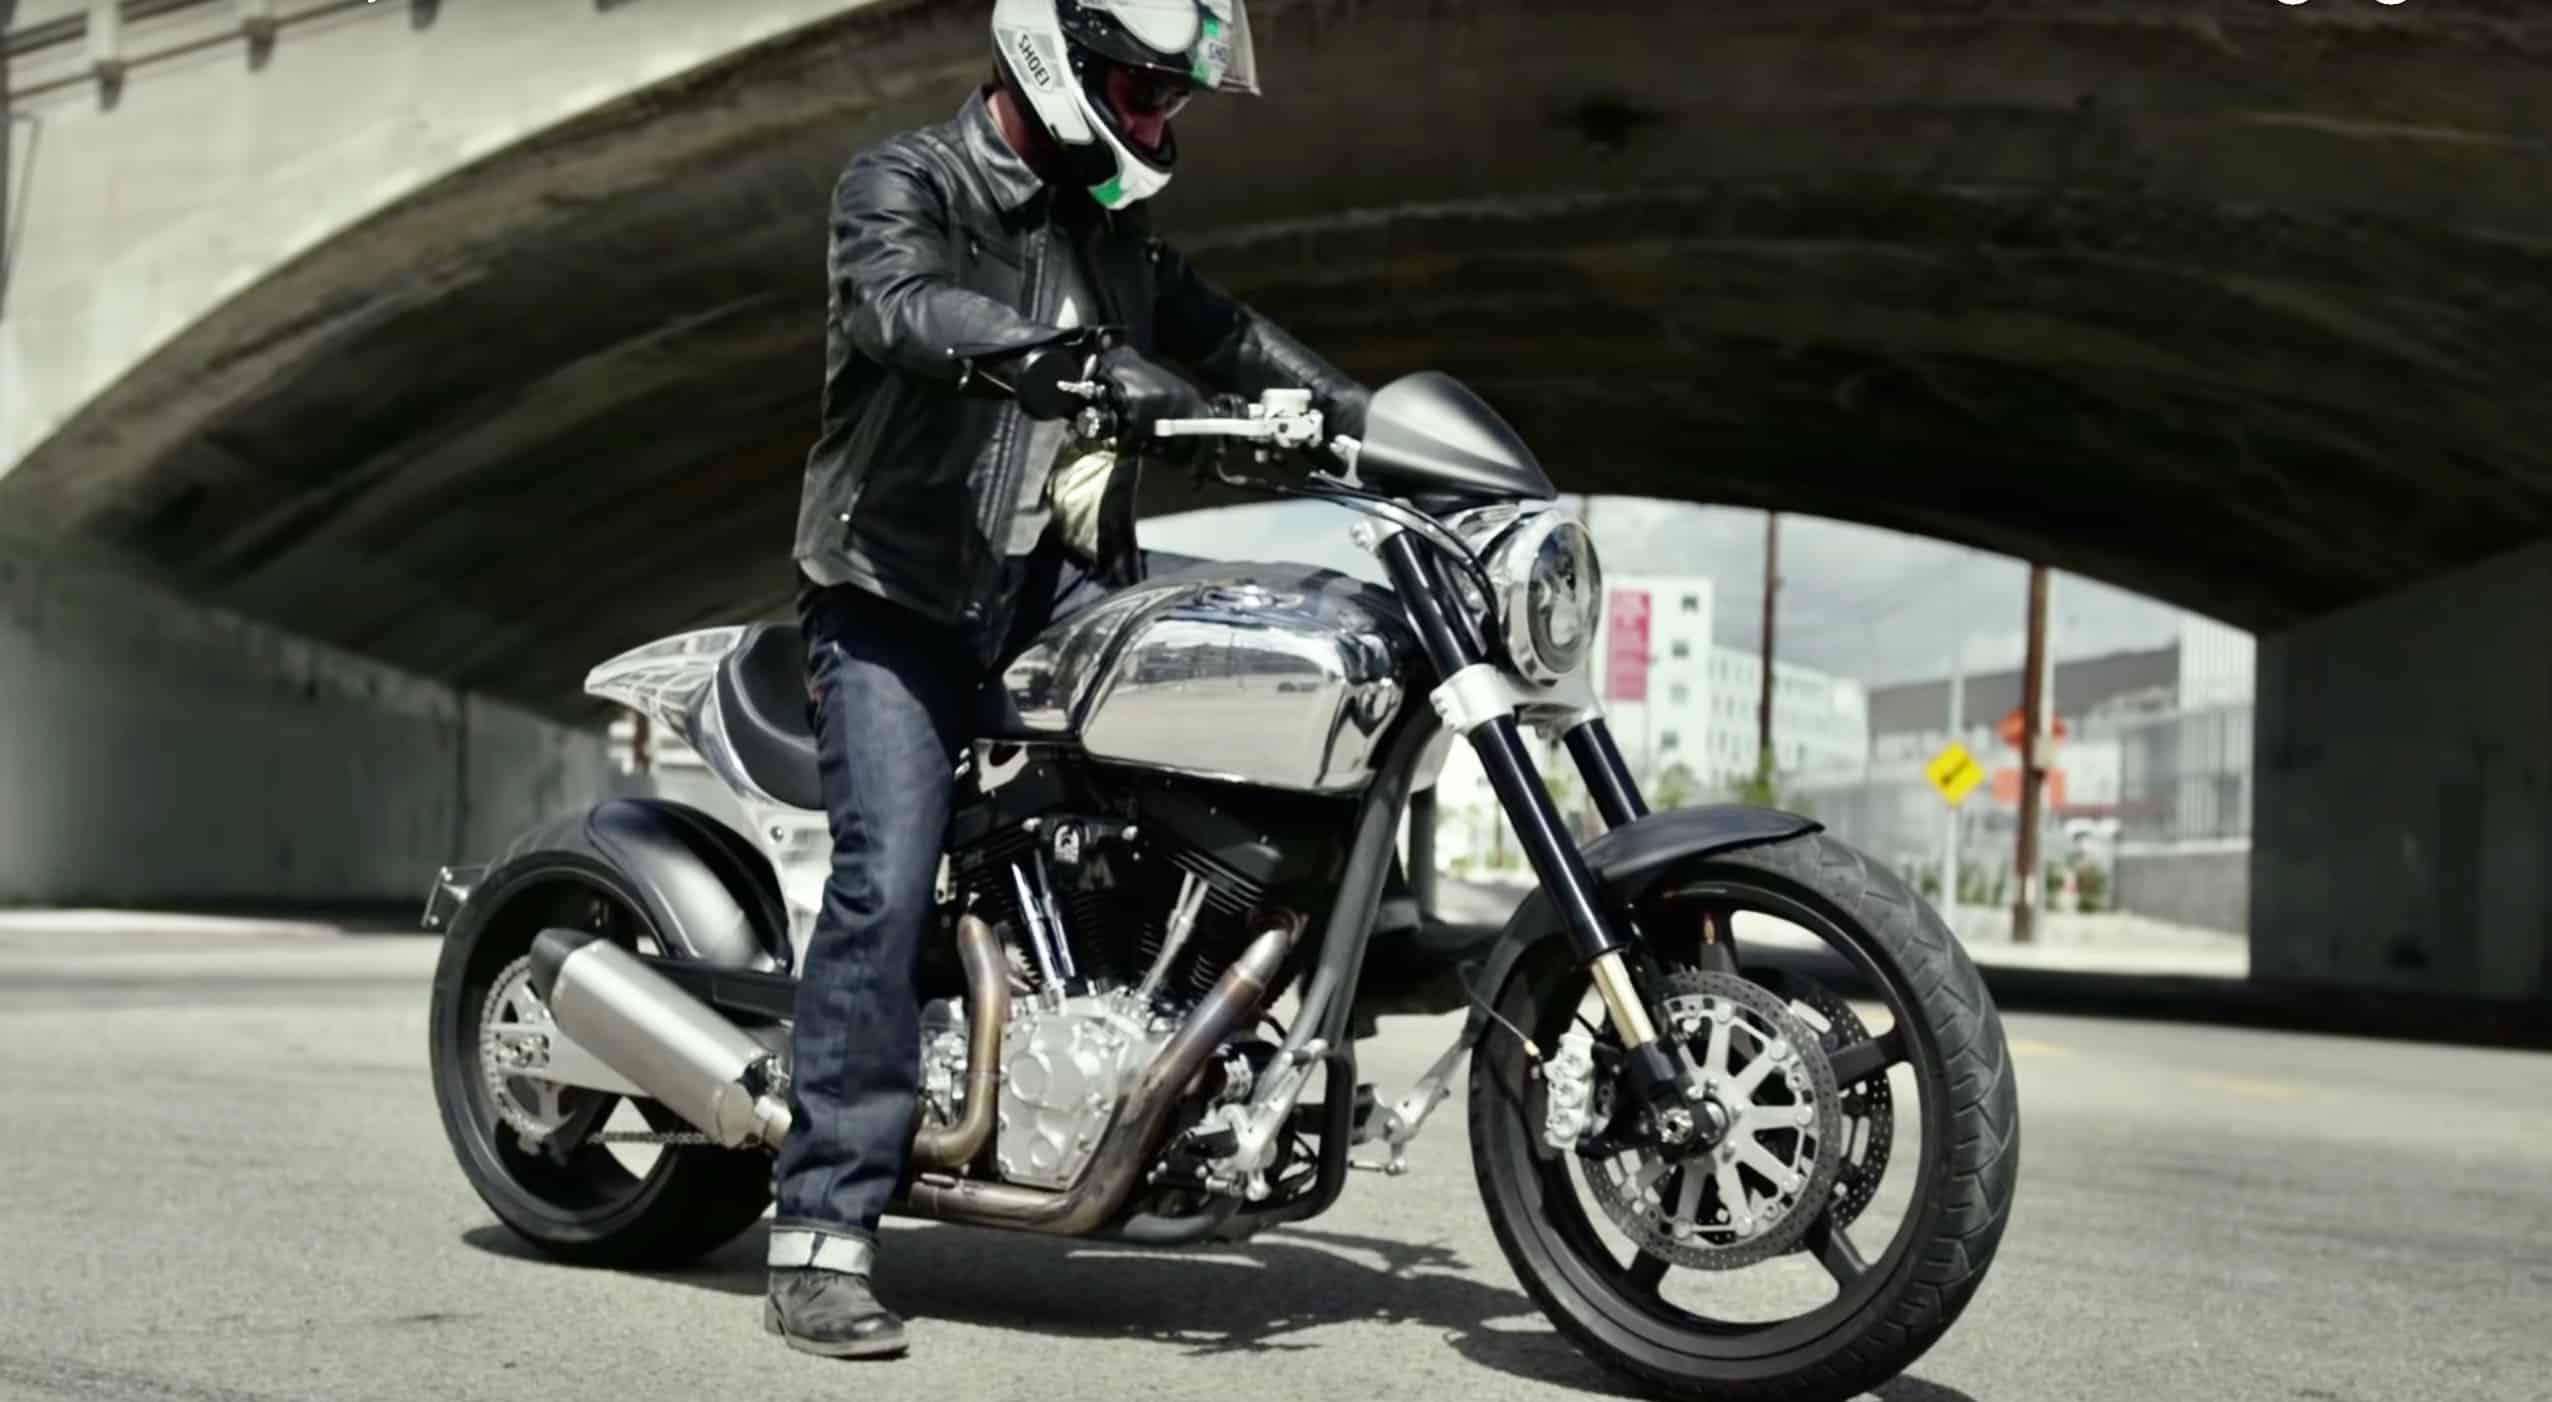 ARCH MOTORCYCLE MOTOS KEANU REEVES motos motocicleta motocicletas